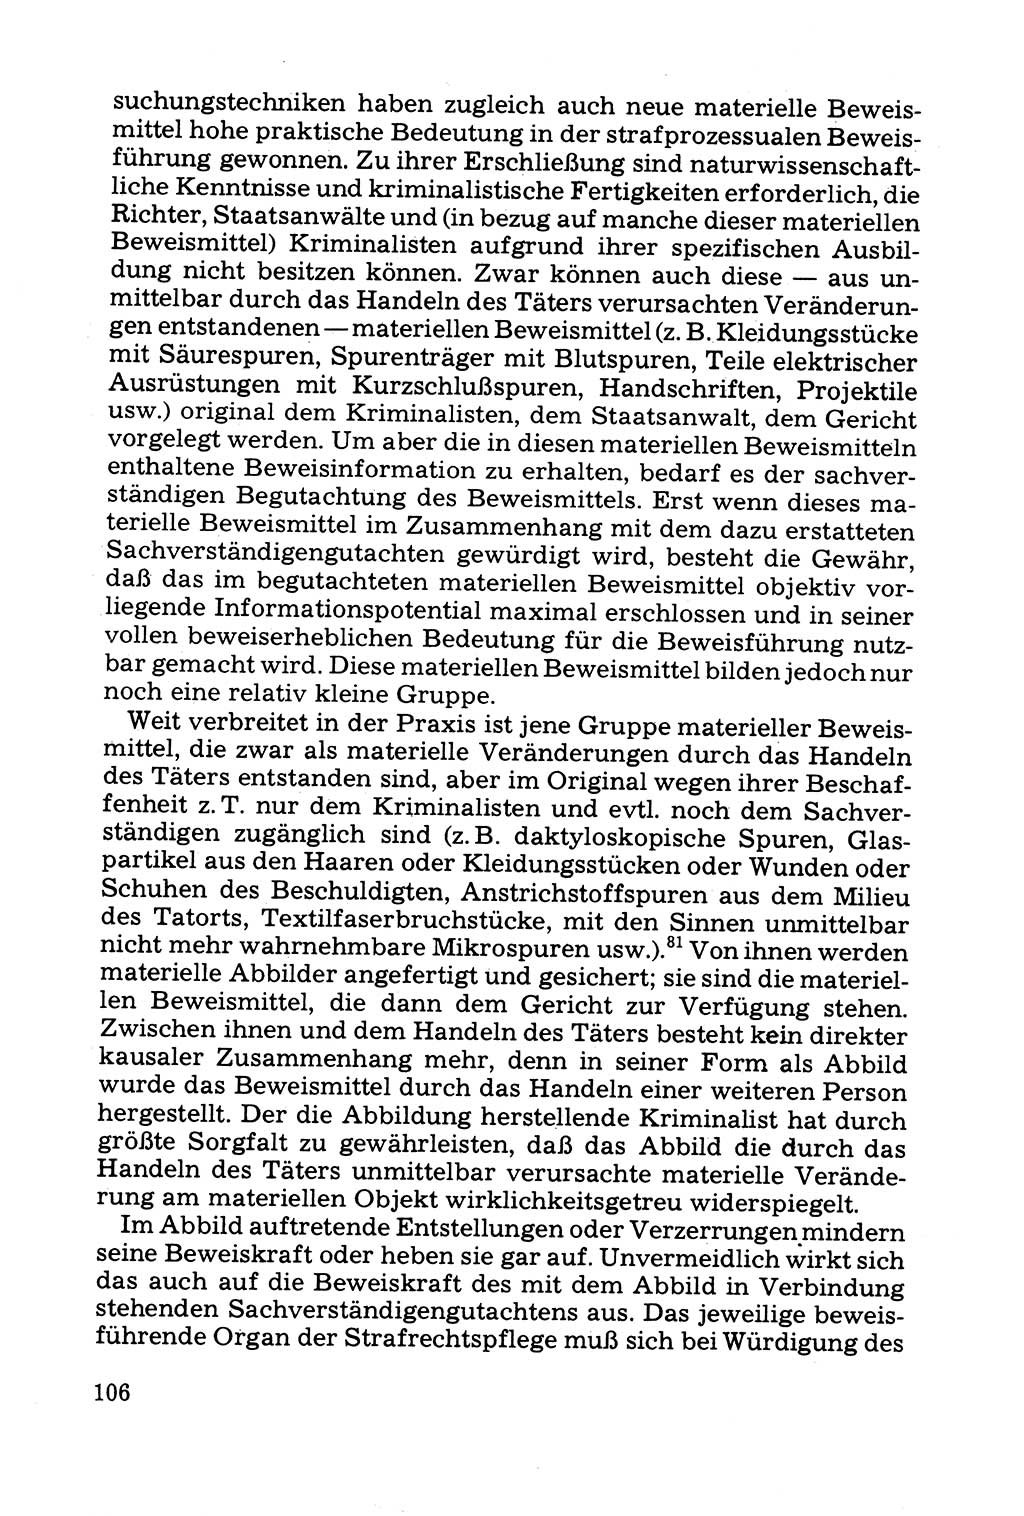 Grundfragen der Beweisführung im Ermittlungsverfahren [Deutsche Demokratische Republik (DDR)] 1980, Seite 106 (Bws.-Fhrg. EV DDR 1980, S. 106)